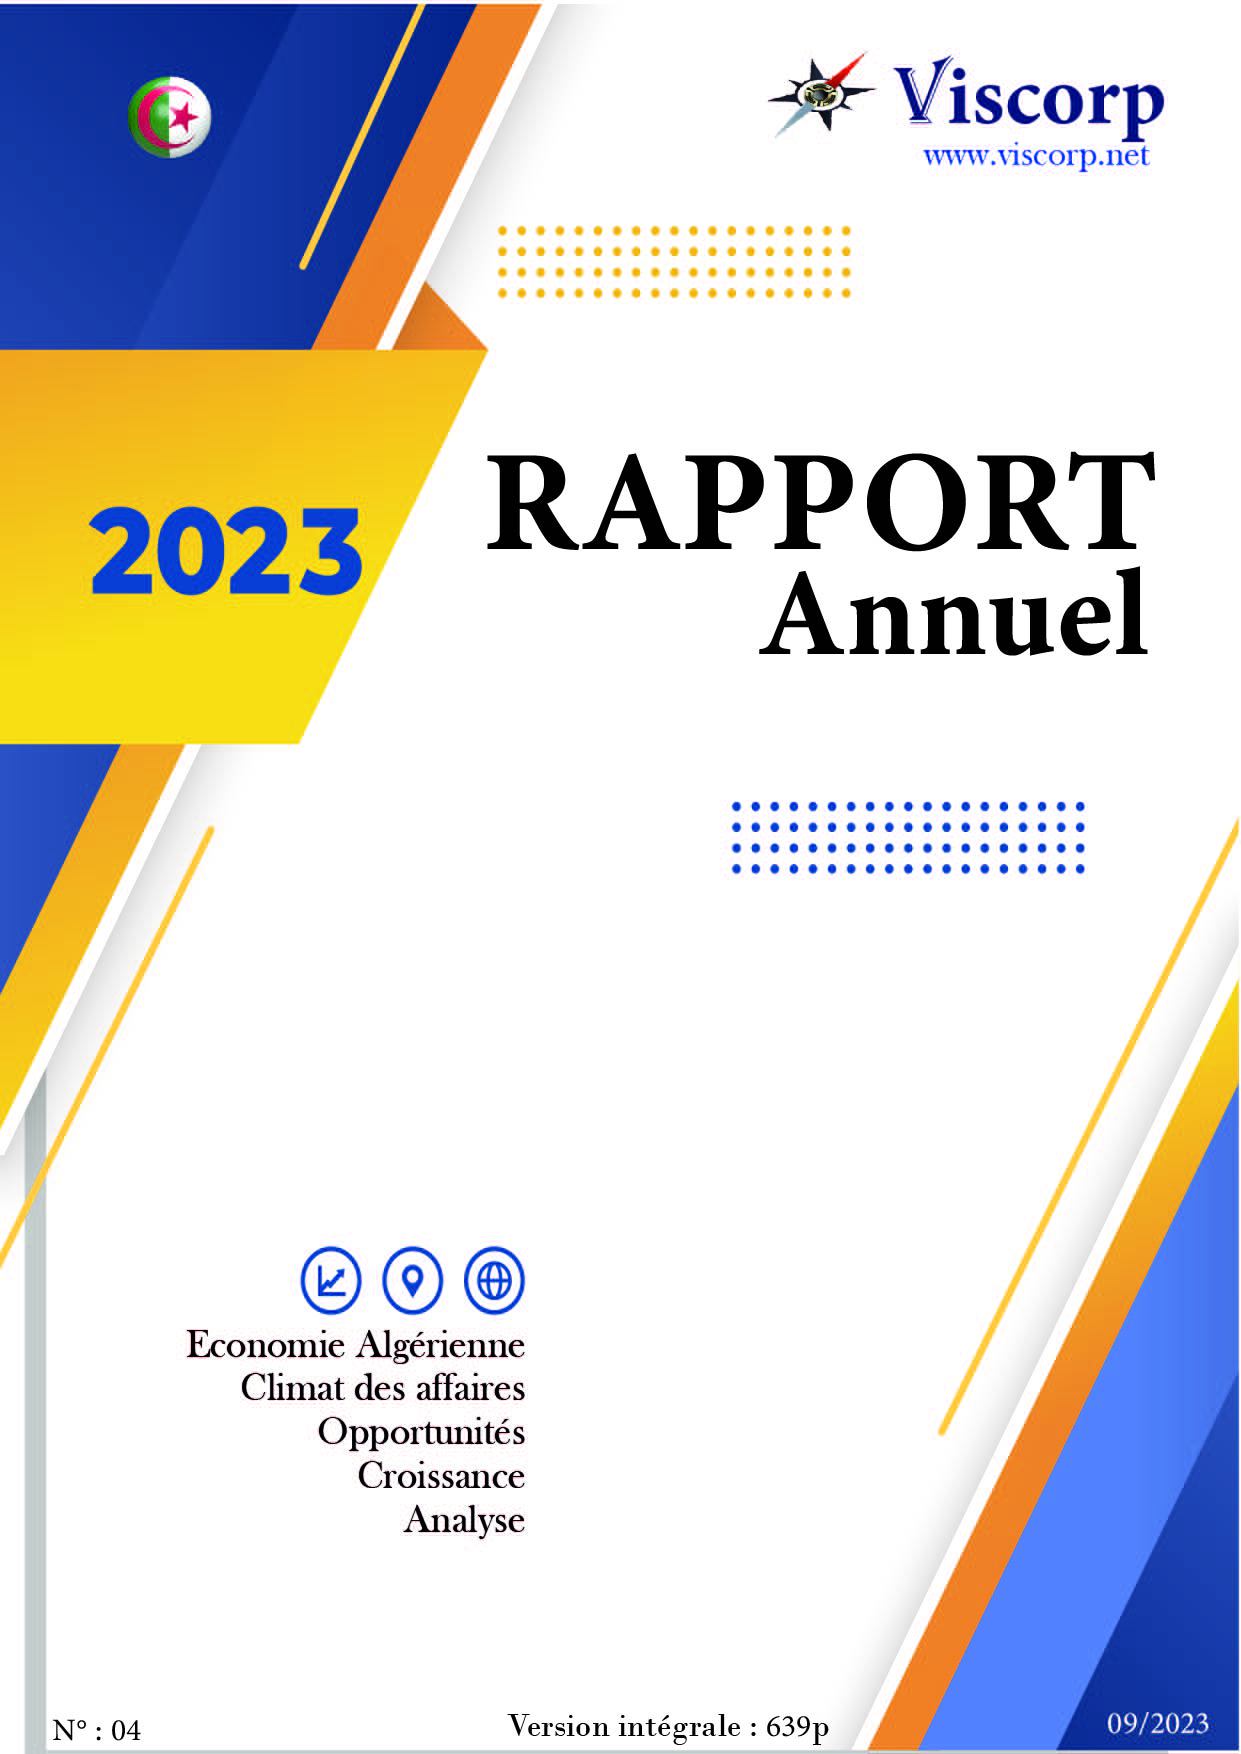 Viscorp - Rapport annuel 2023_Plan de travail 1